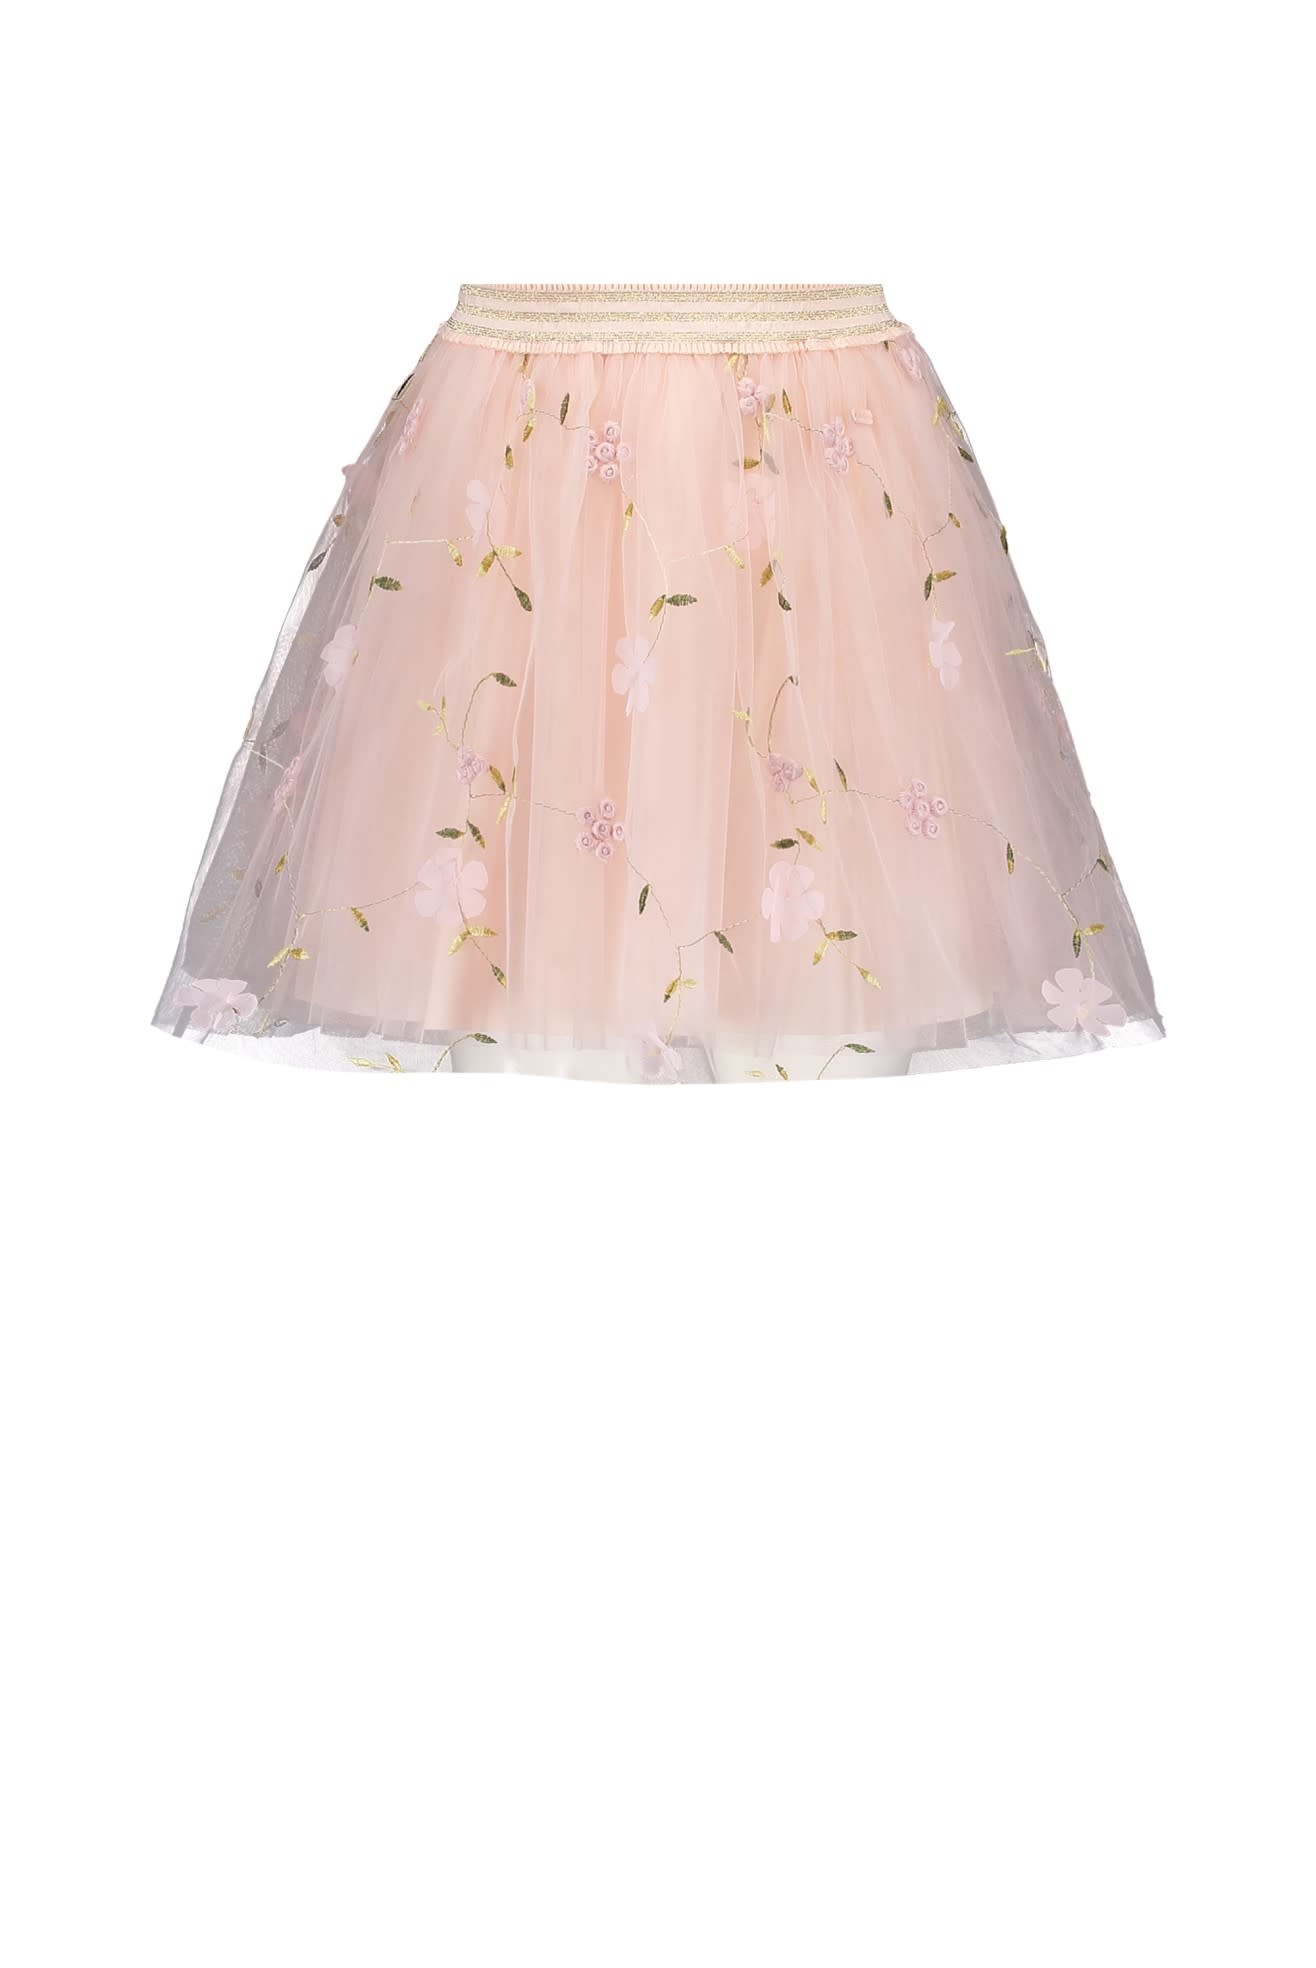 Taylor Spring Fever Tulle Skirt